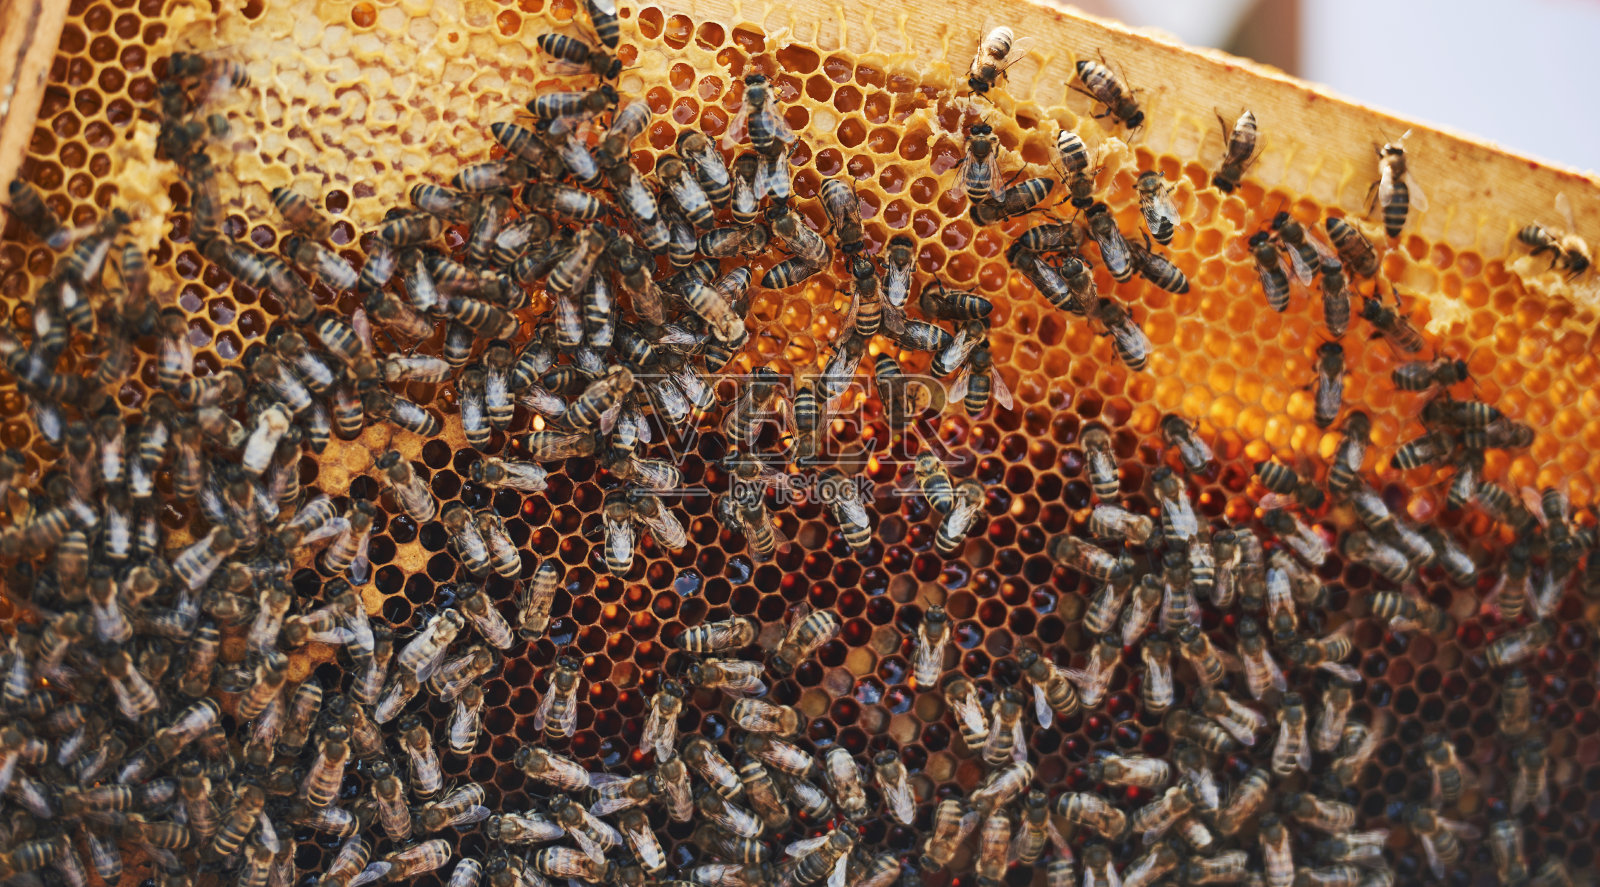 蜂房的详细视图充满了蜜蜂。养蜂的概念照片摄影图片